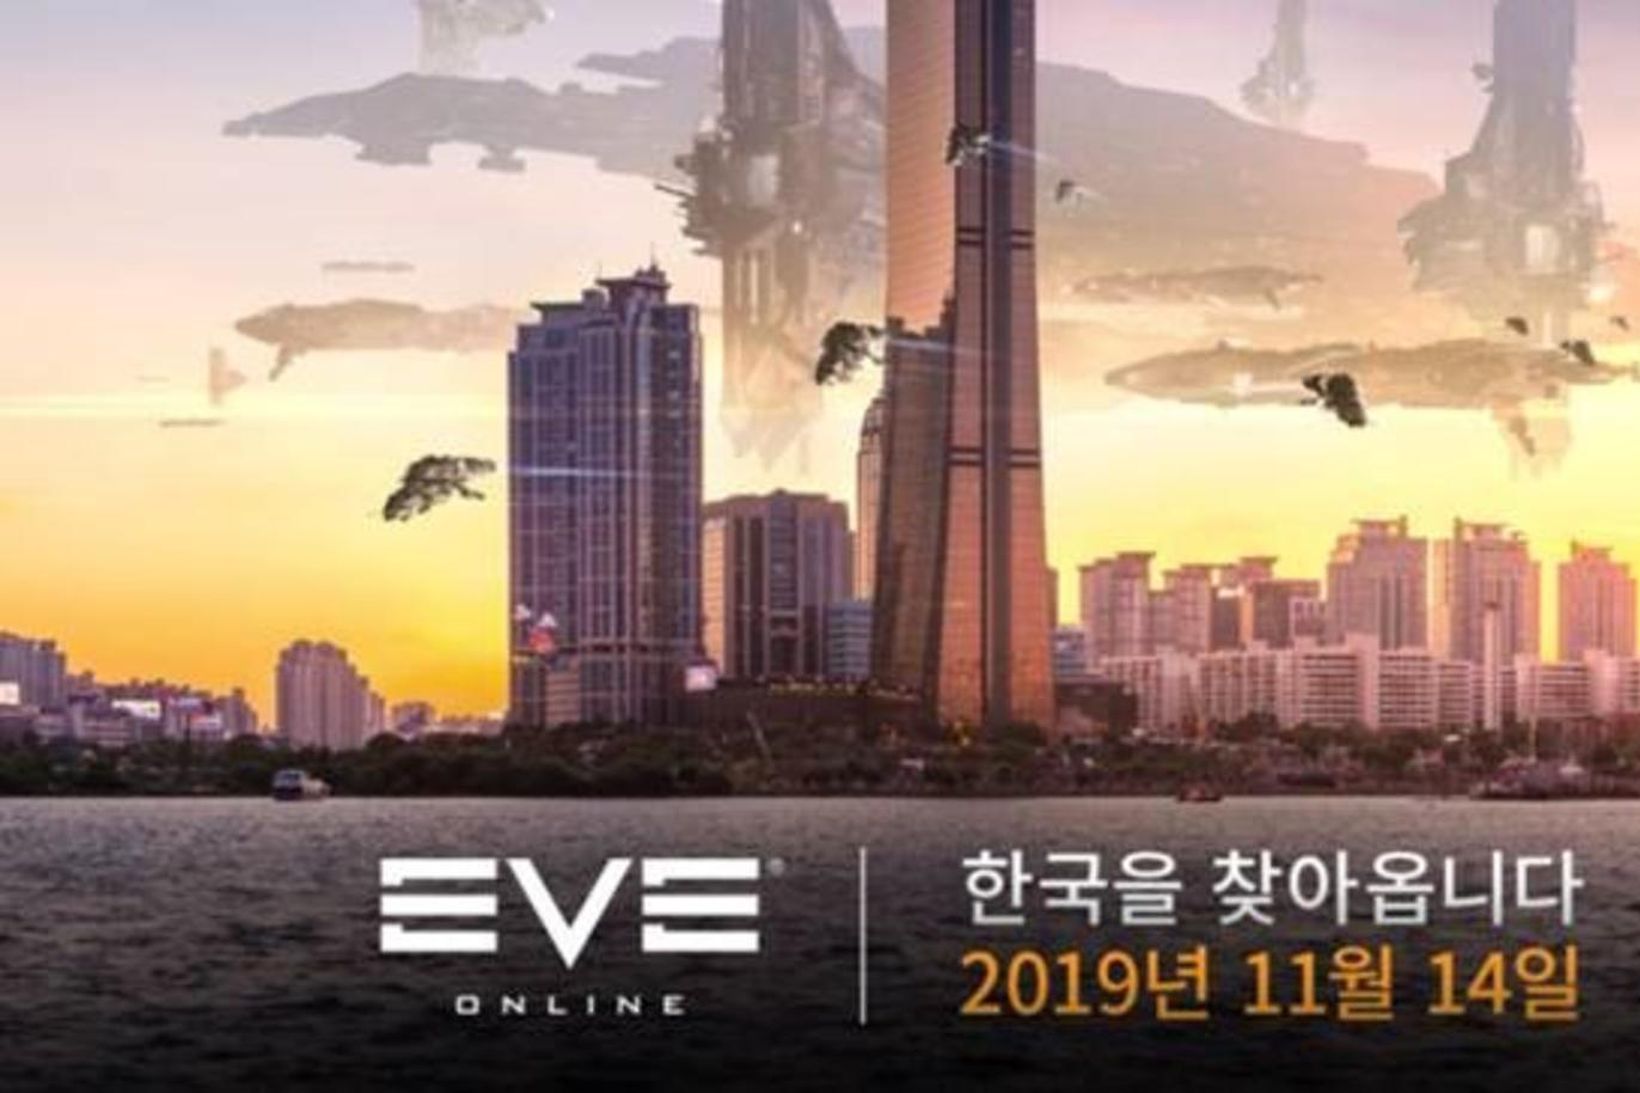 Eve Online kemur út á kóresku á fimmtudaginn.